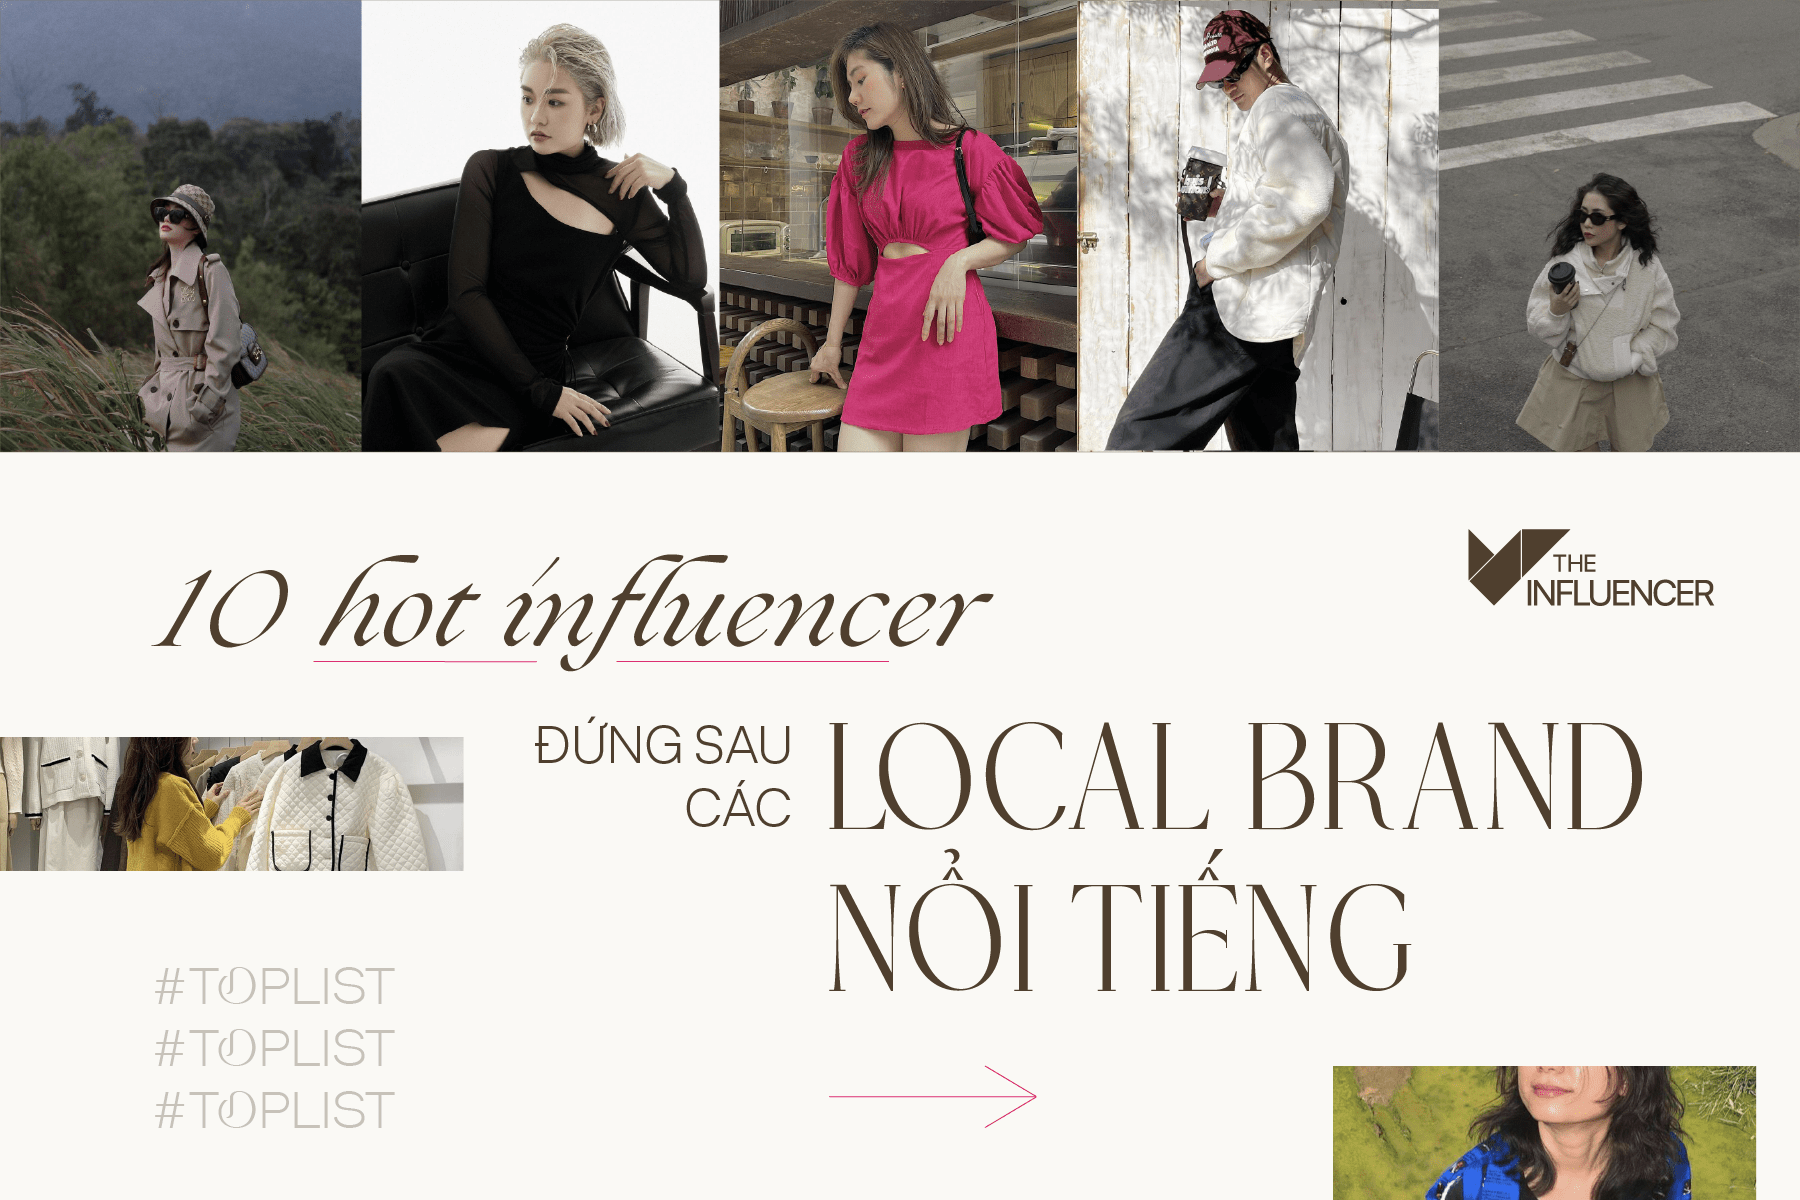 #Toplist: 10 hot influencer đứng sau những local brand nổi tiếng (phần 2)